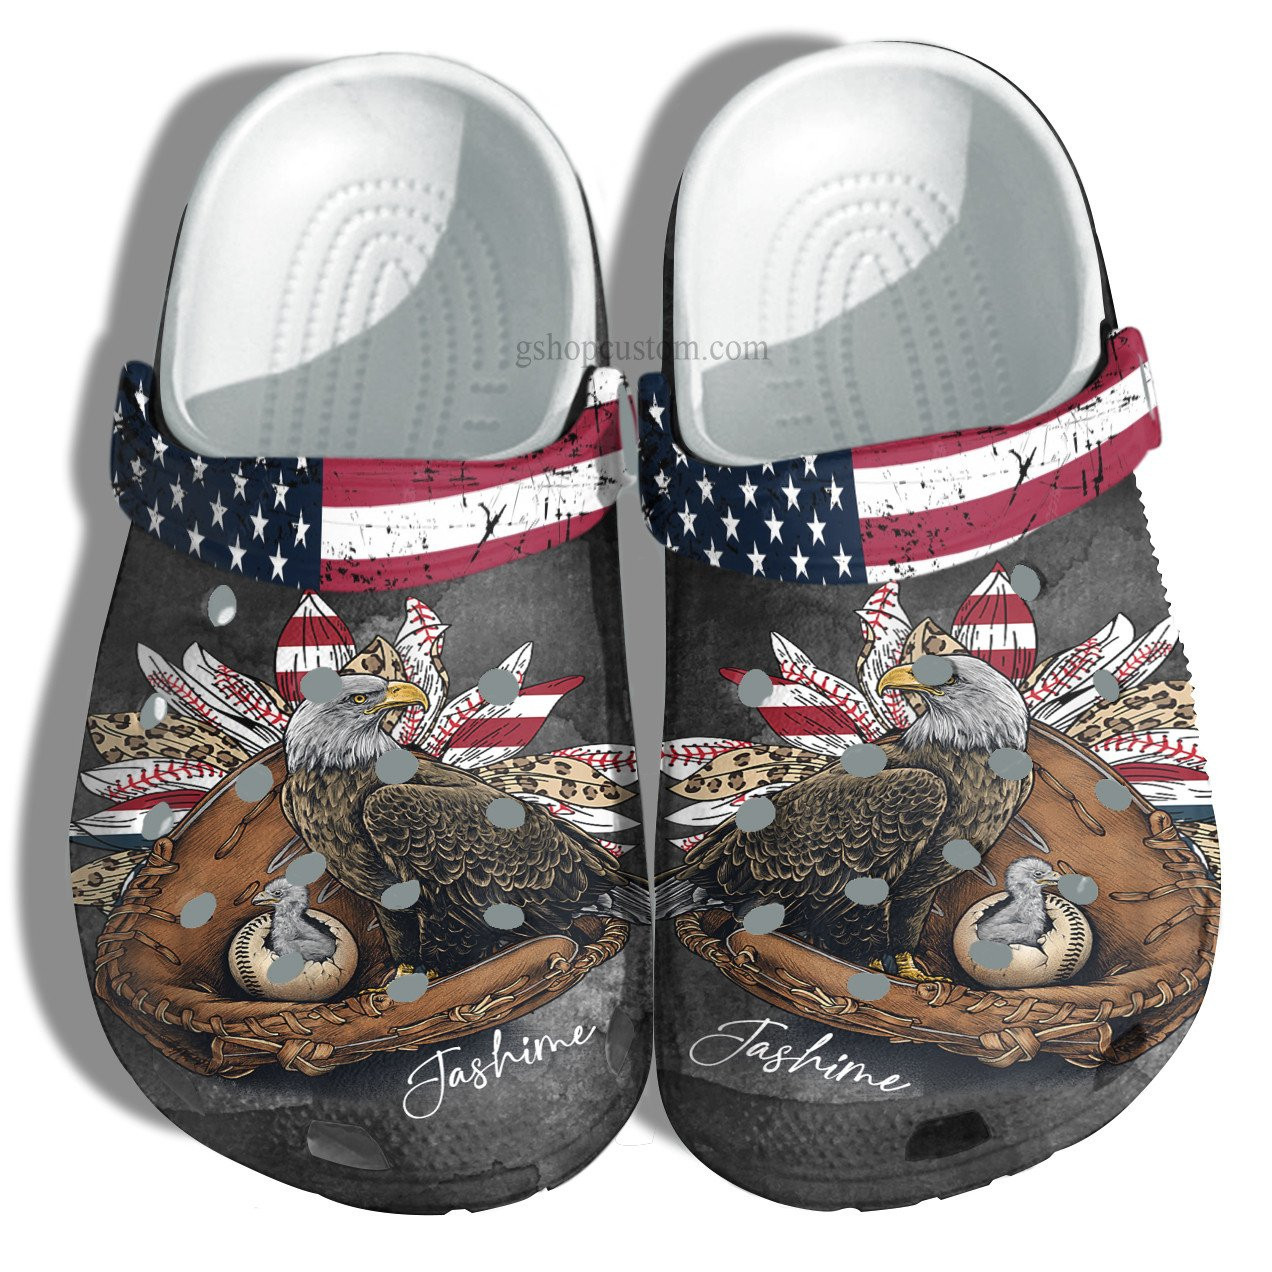 Baseball Eagle Sunflower Leopard Usa Flag Crocs Shoes Gift Mom Grandma - Baseball Eagle America Crocs Shoes Croc Clogs